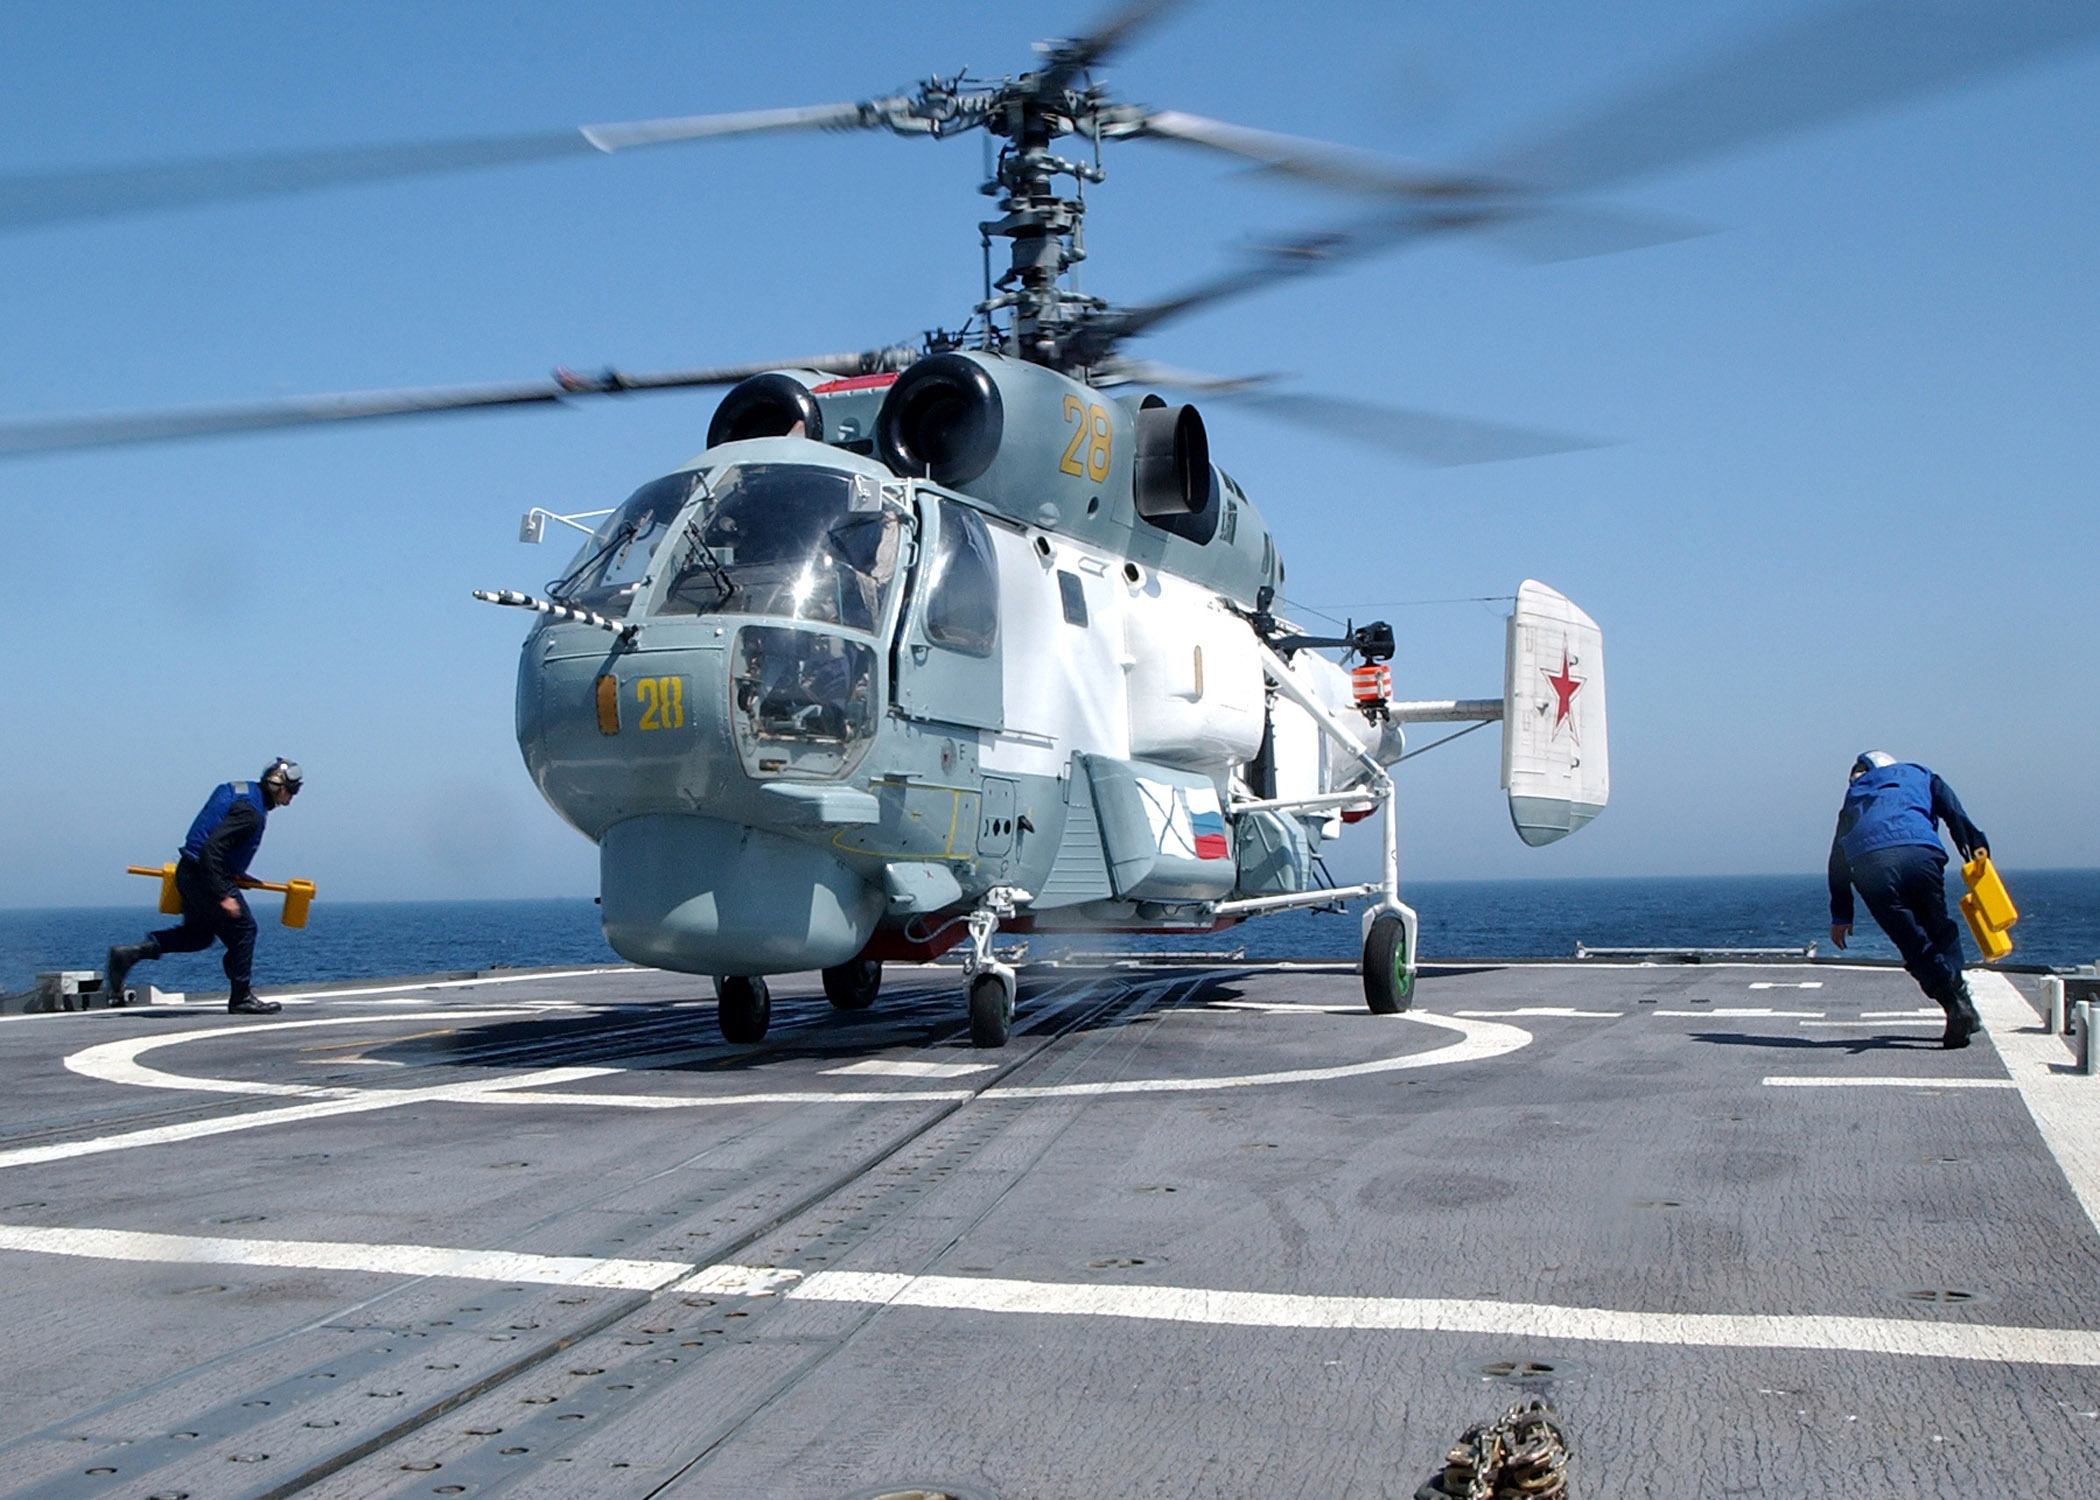 Авиация военно морского флота. Ка-27 вертолёт. Модернизированные вертолеты ка-27м. Вертолёт ка 27 ВМФ России. Ка-27пл палубный противолодочный вертолёт.